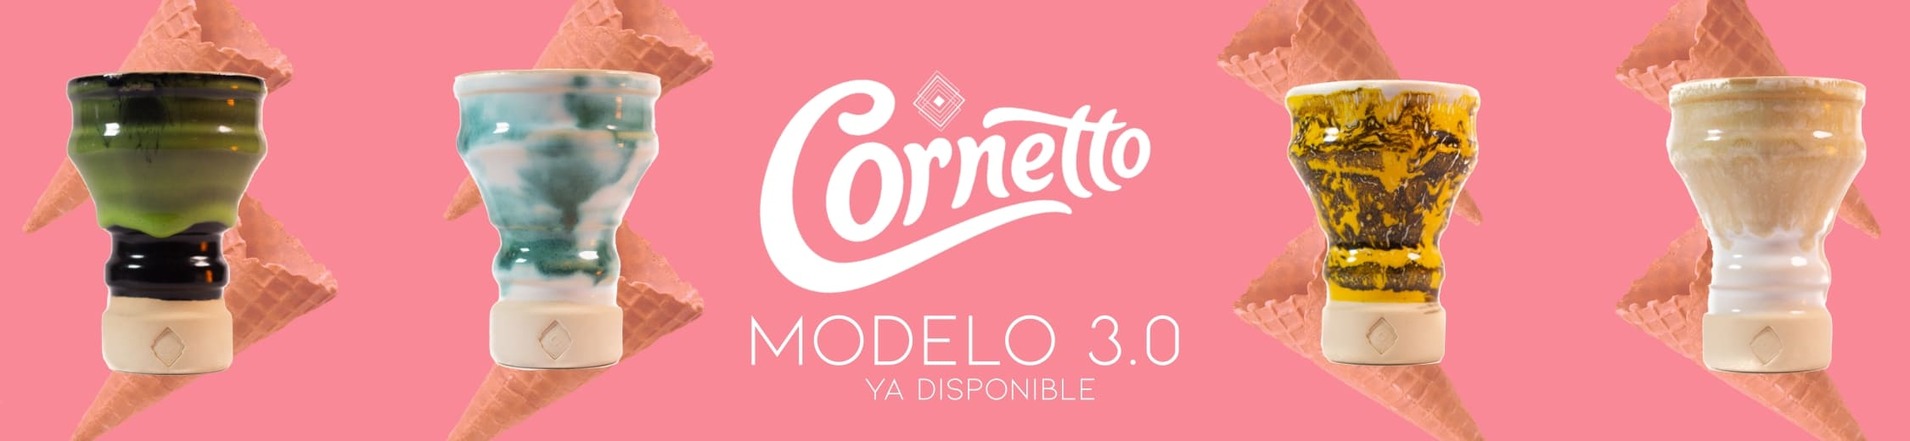 Cornetto 3.0